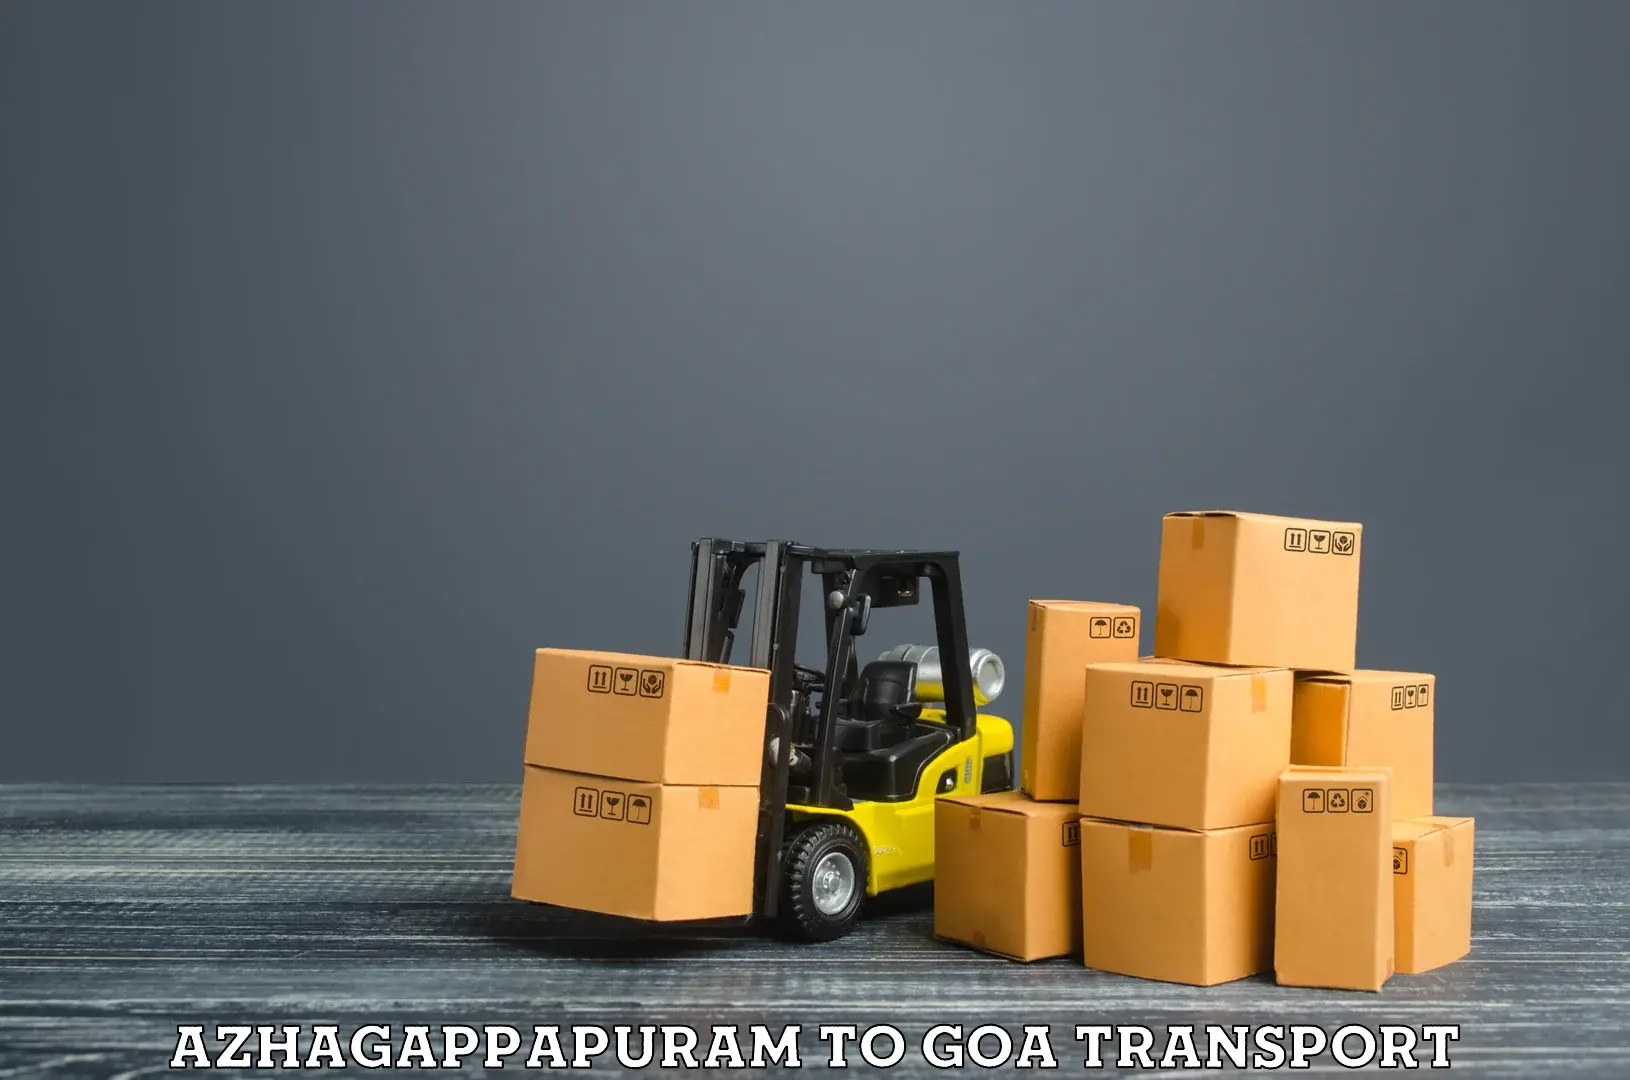 Material transport services Azhagappapuram to Mormugao Port